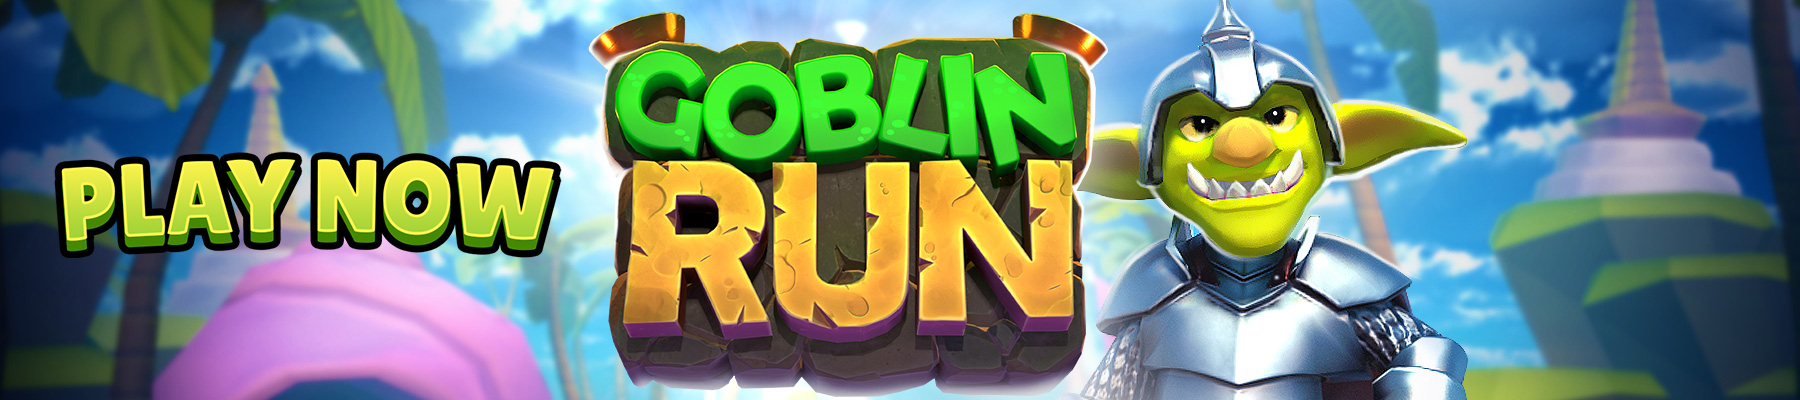 এখন Goblin Run খেলুন